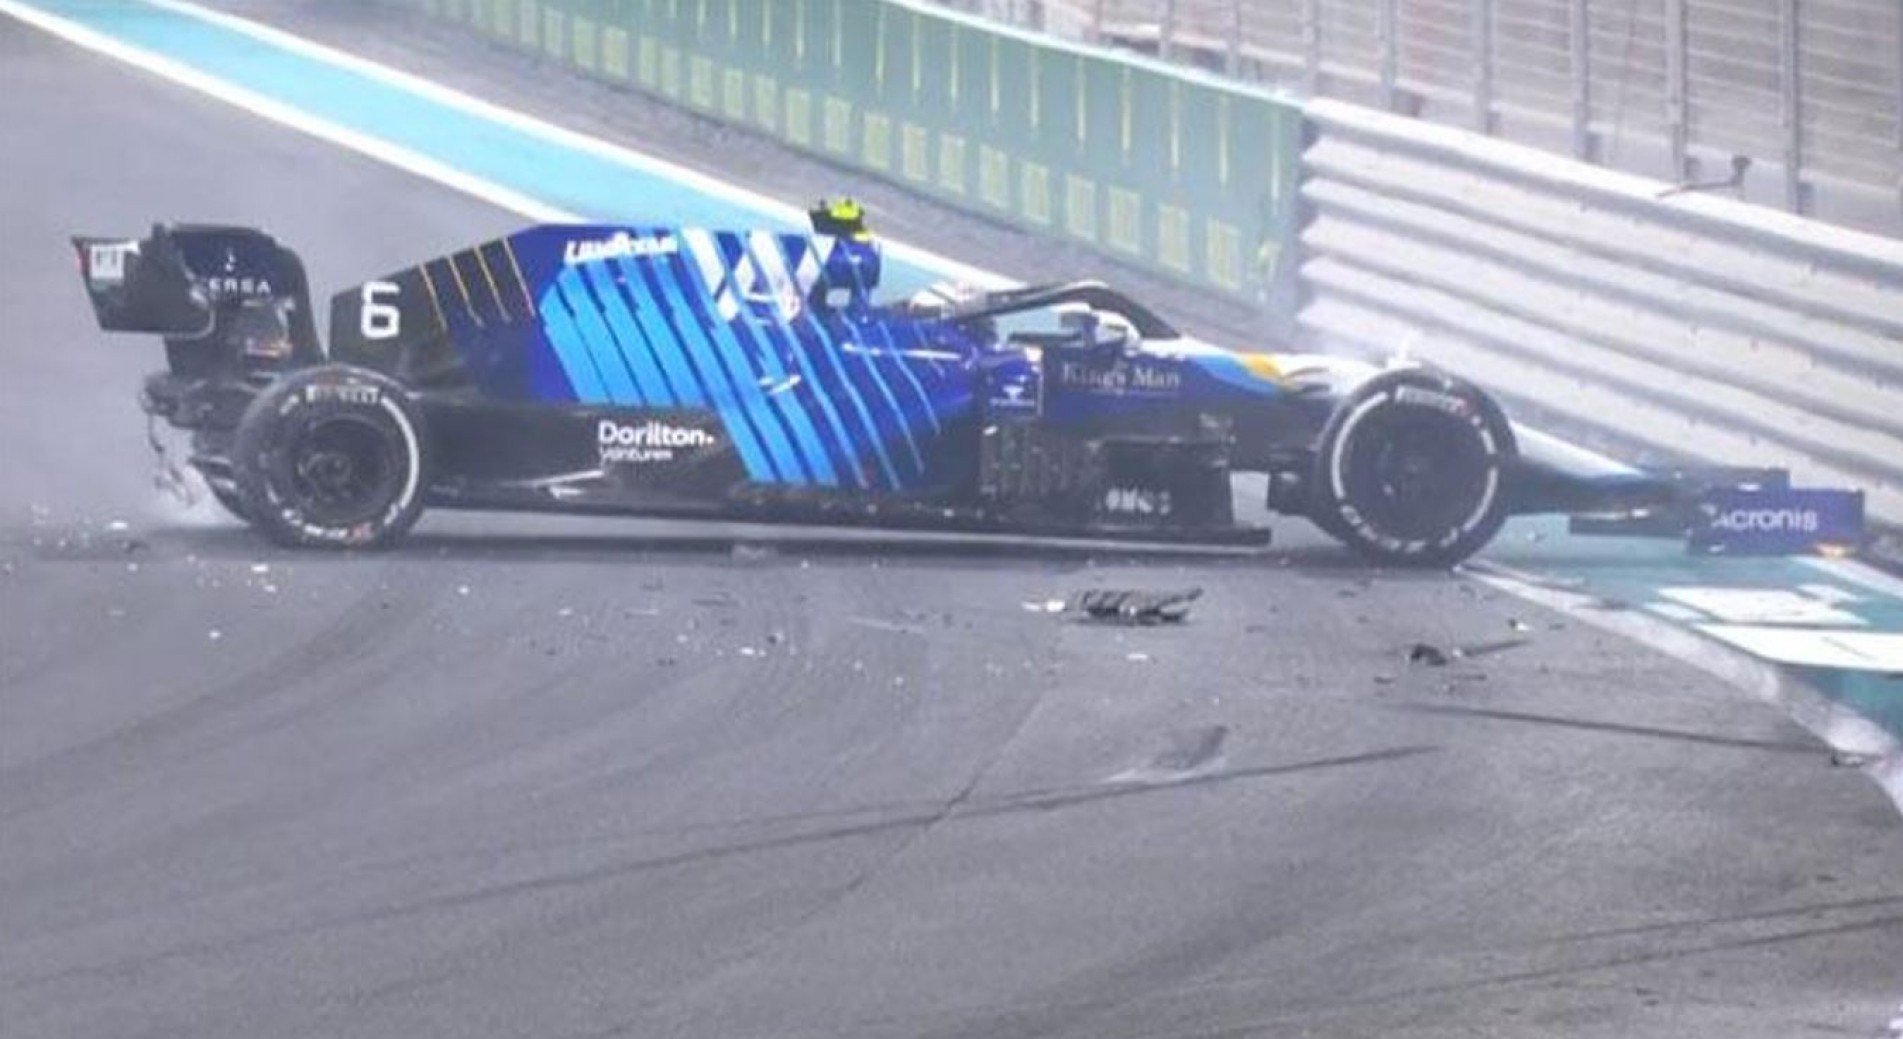 Batida que provocou safety car ajudou Verstappen.